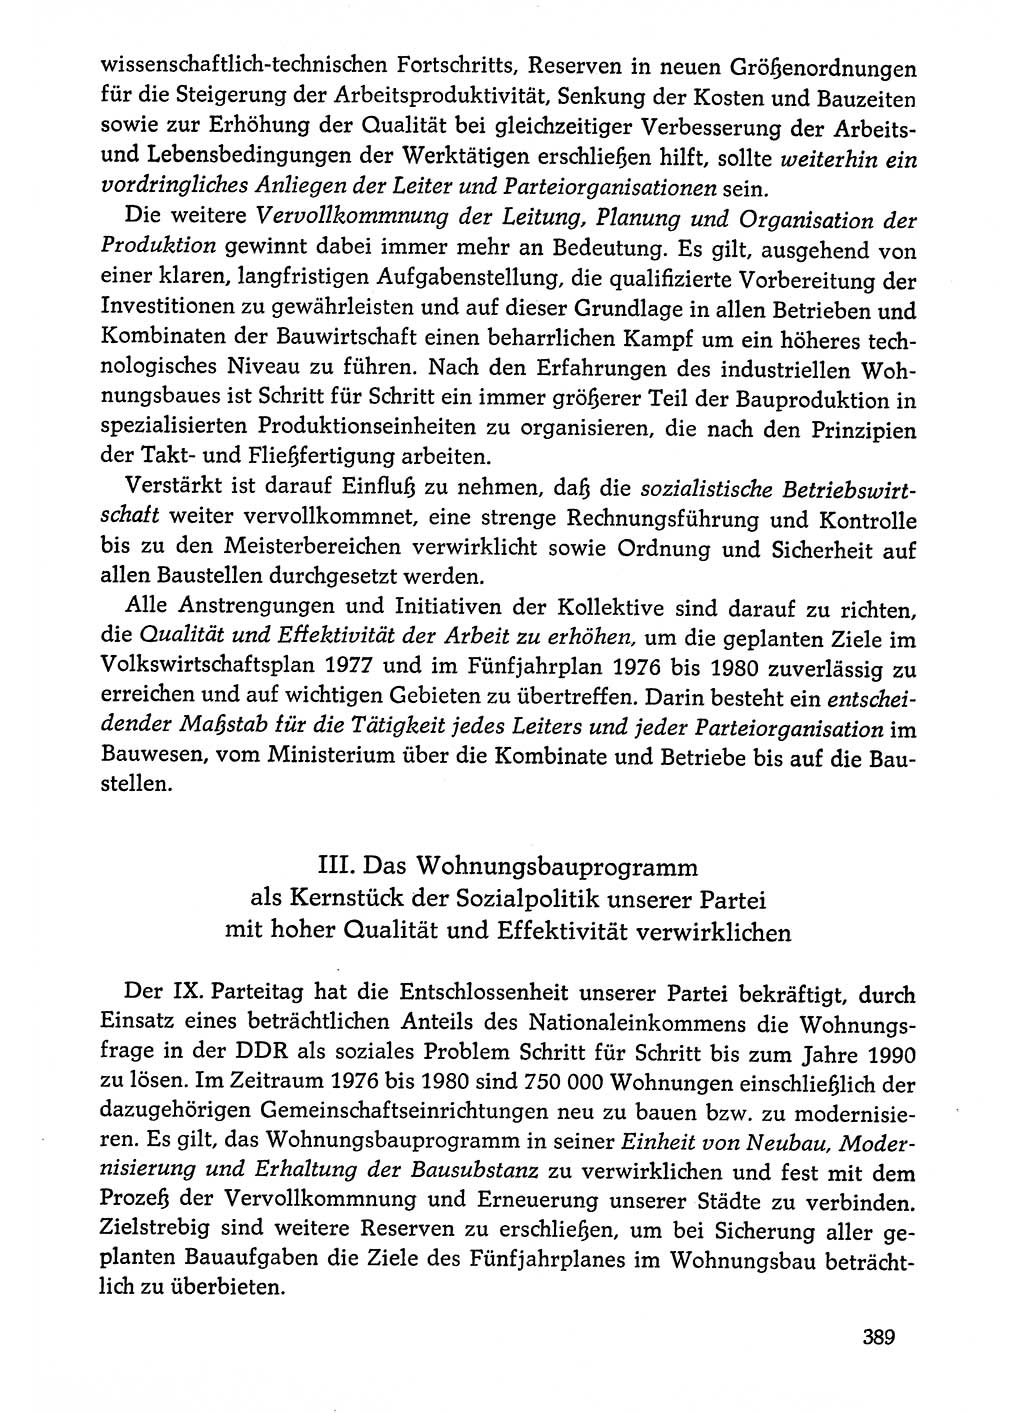 Dokumente der Sozialistischen Einheitspartei Deutschlands (SED) [Deutsche Demokratische Republik (DDR)] 1976-1977, Seite 389 (Dok. SED DDR 1976-1977, S. 389)